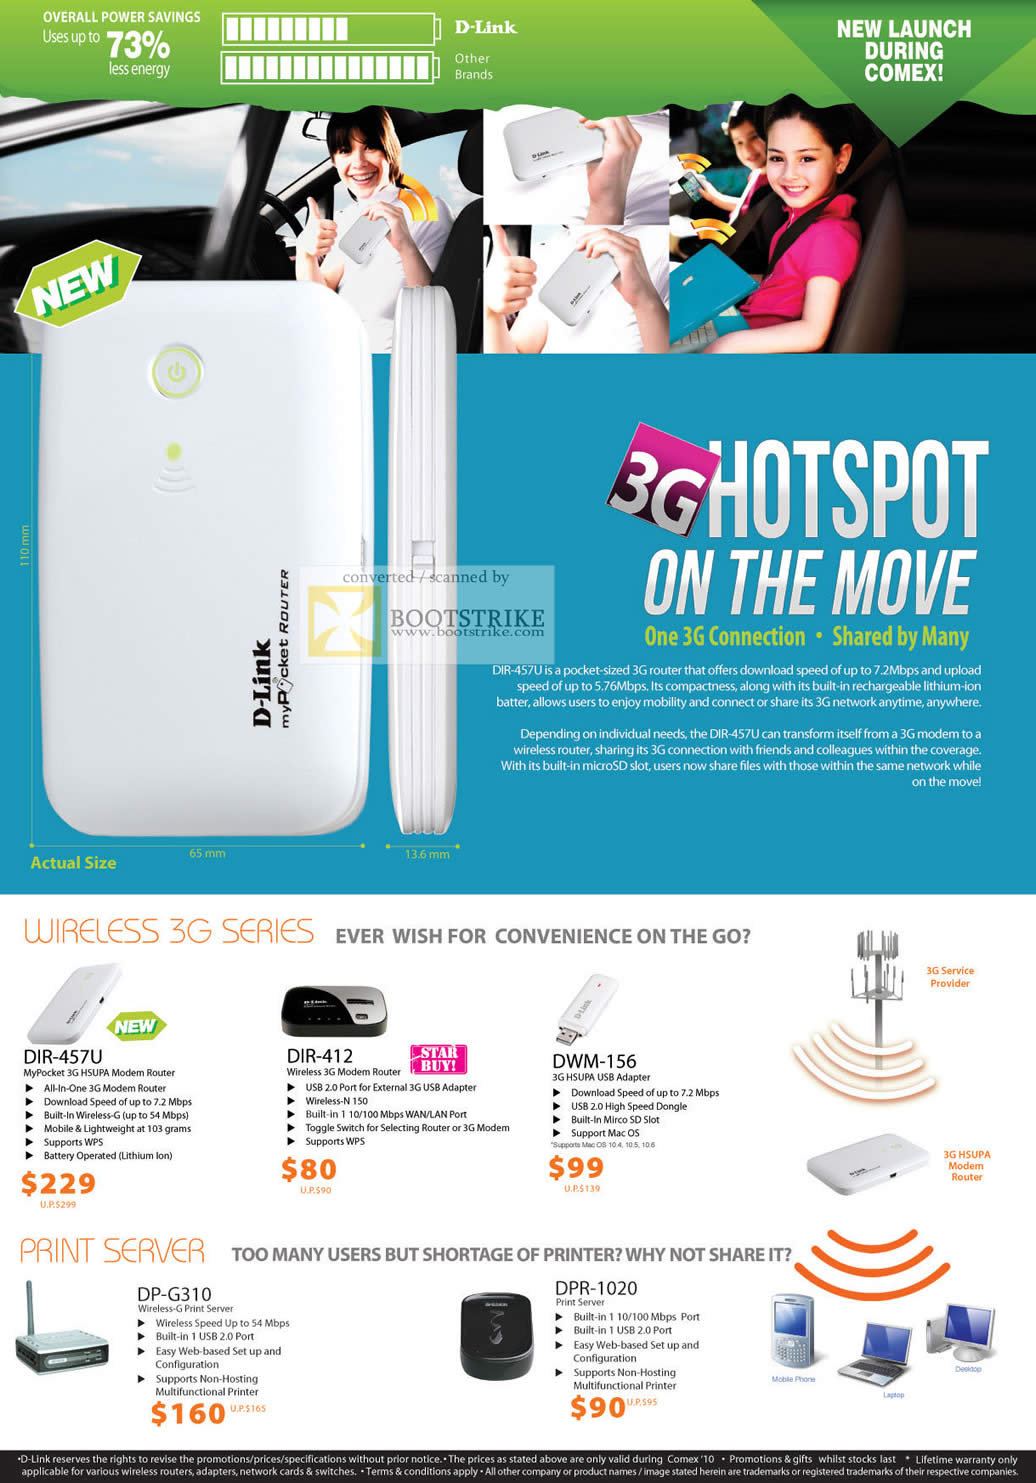 Comex 2010 price list image brochure of D Link 3G Hotspot Wireless DIR 457U 412 DWM 156 Print Server DP G310 DPR 1020